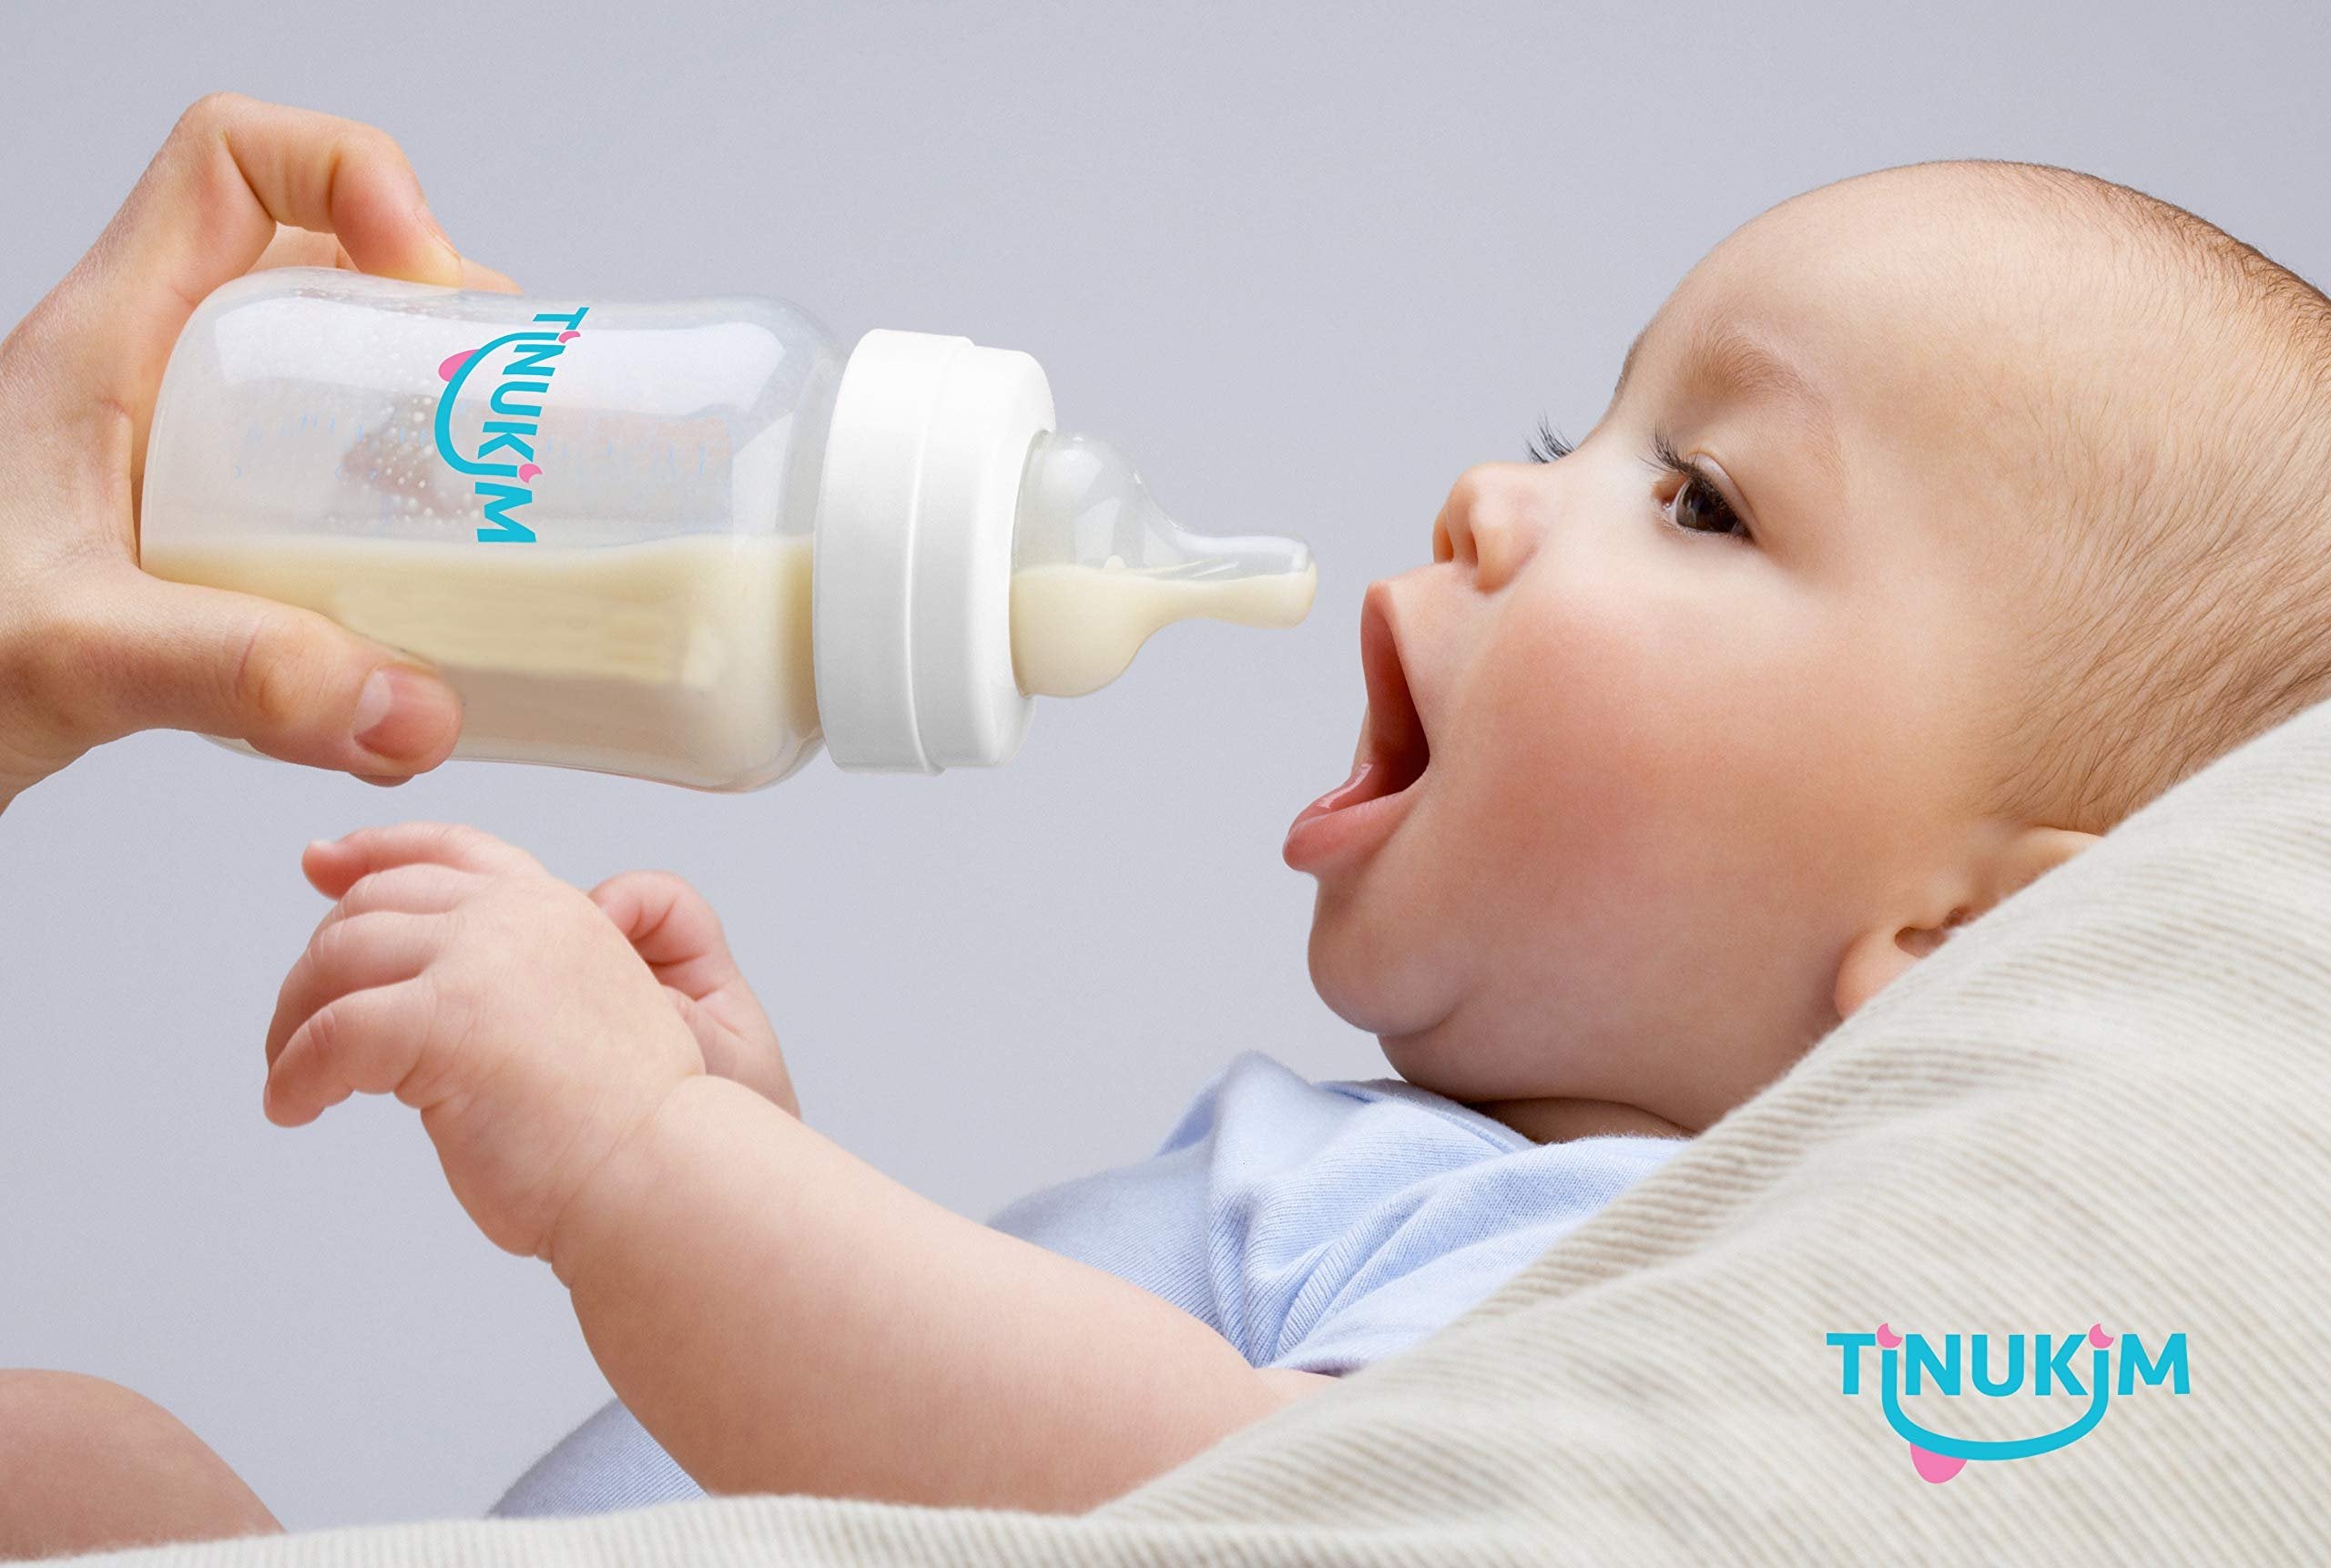 Tinukim iFeed Baby Bottle - 4oz Tube, Self-Feeding, Anti-Colic, White - 2-Pack (Size: 2 Count)